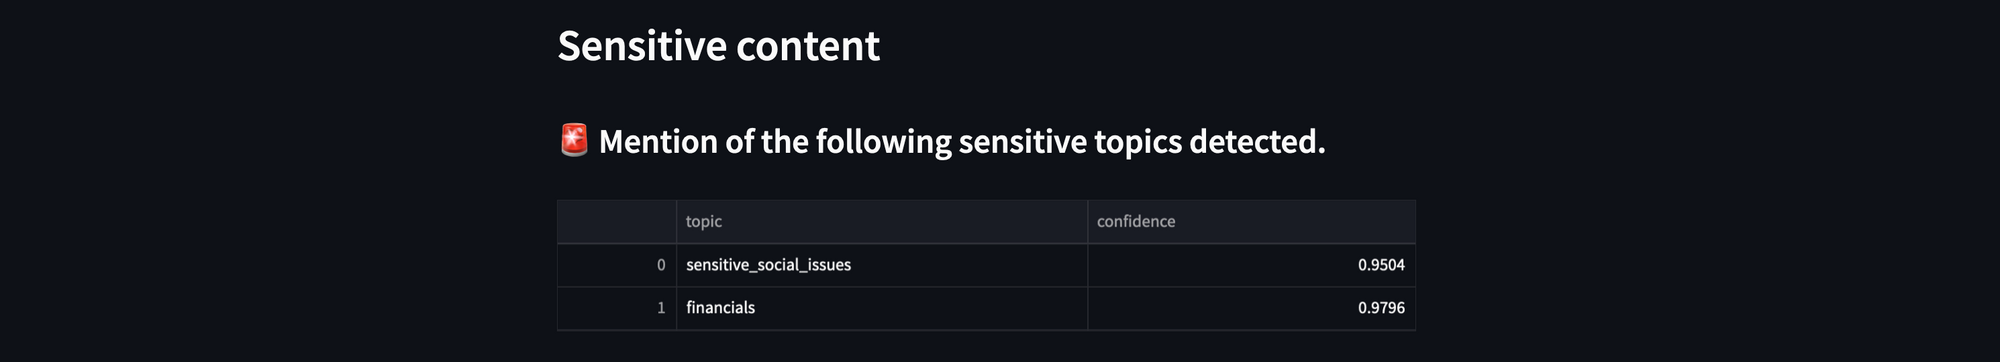 sensitive-content-detected